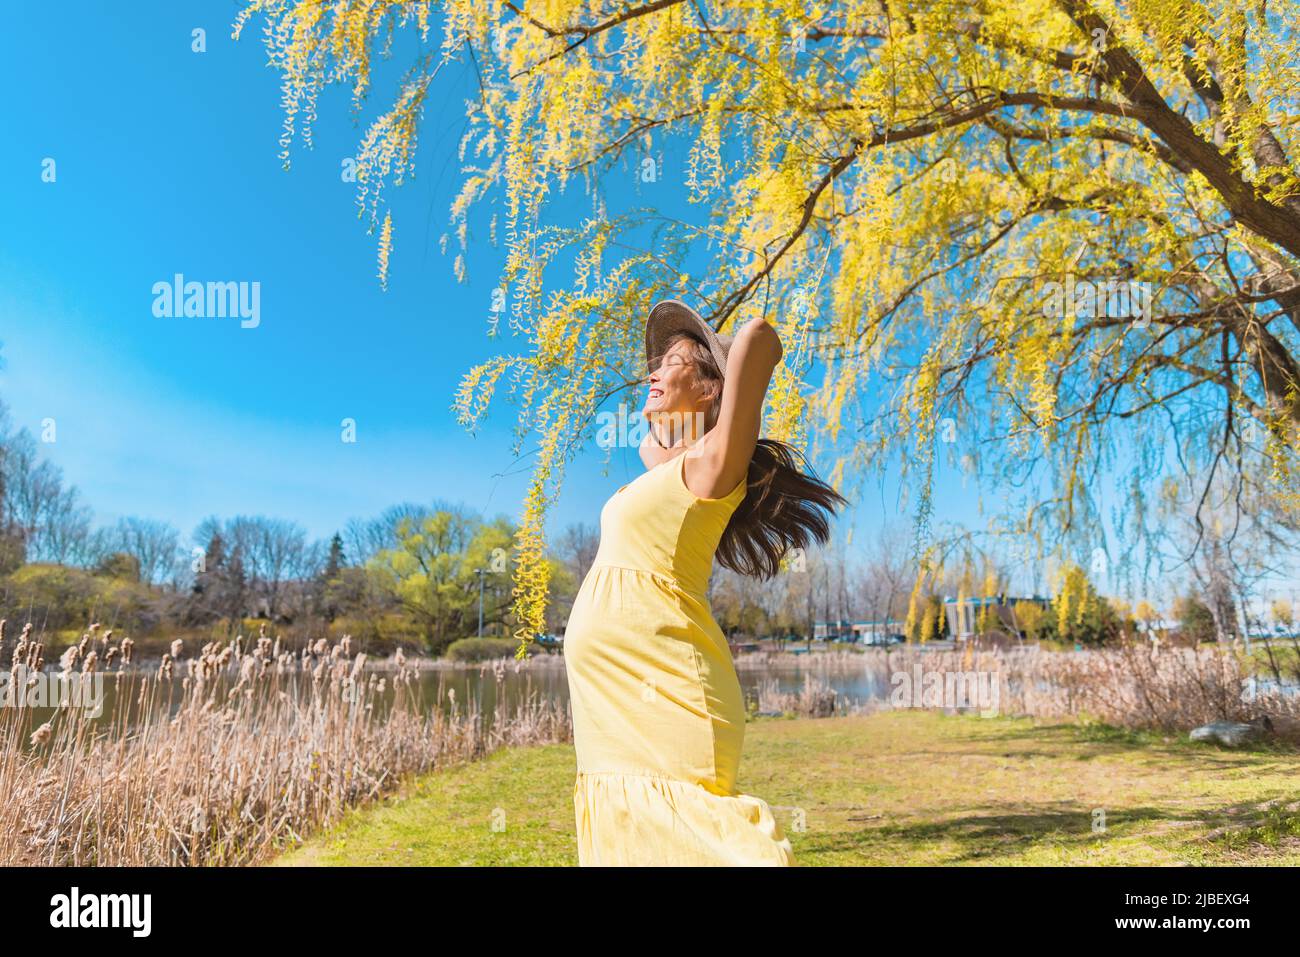 Bonne femme enceinte asiatique dansant gratuitement dans la nature parc d'été portant chapeau de soleil et robe jaune. Grossesse joie et insouciance Banque D'Images